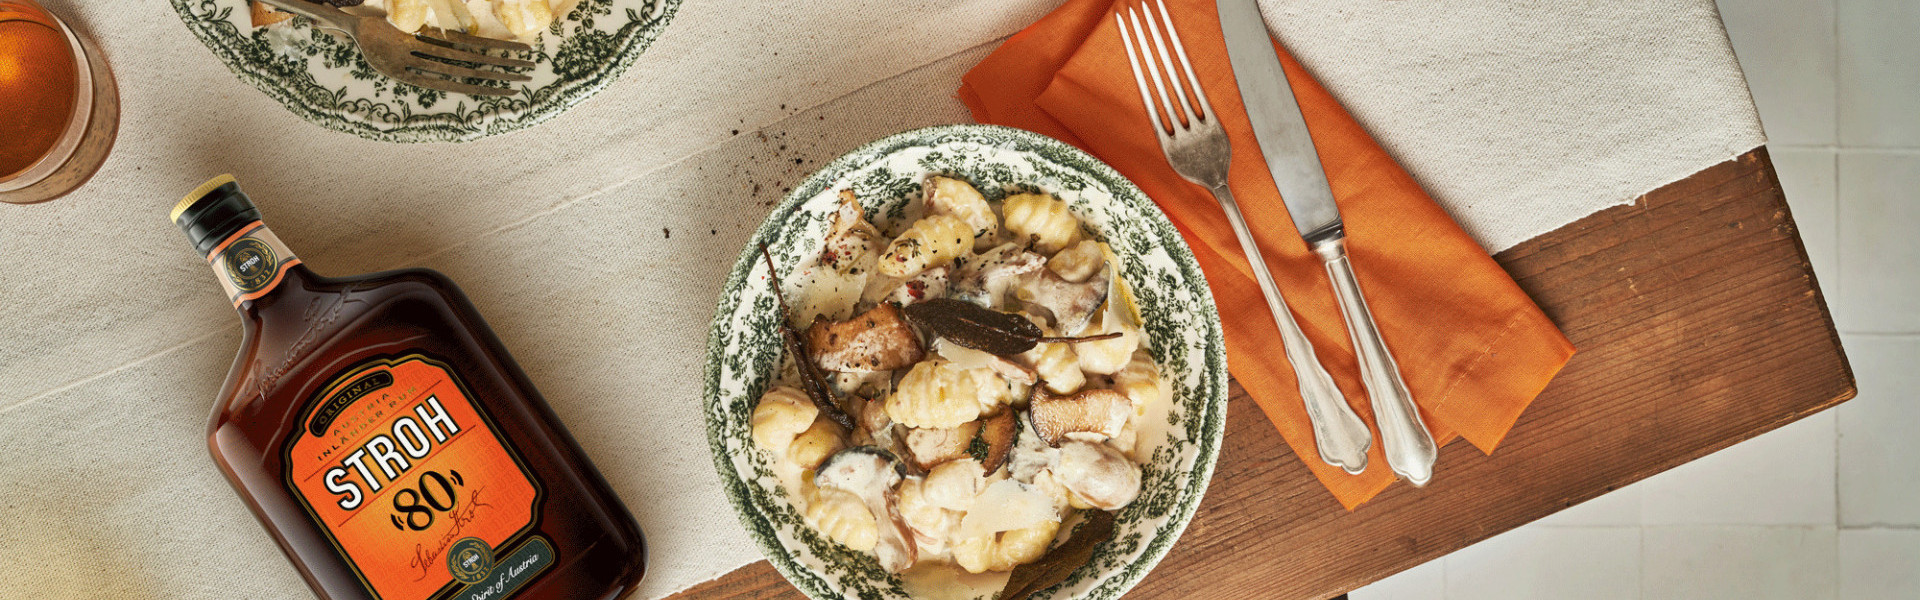 Kartoffel-Gnocchi mit Pilzsauce